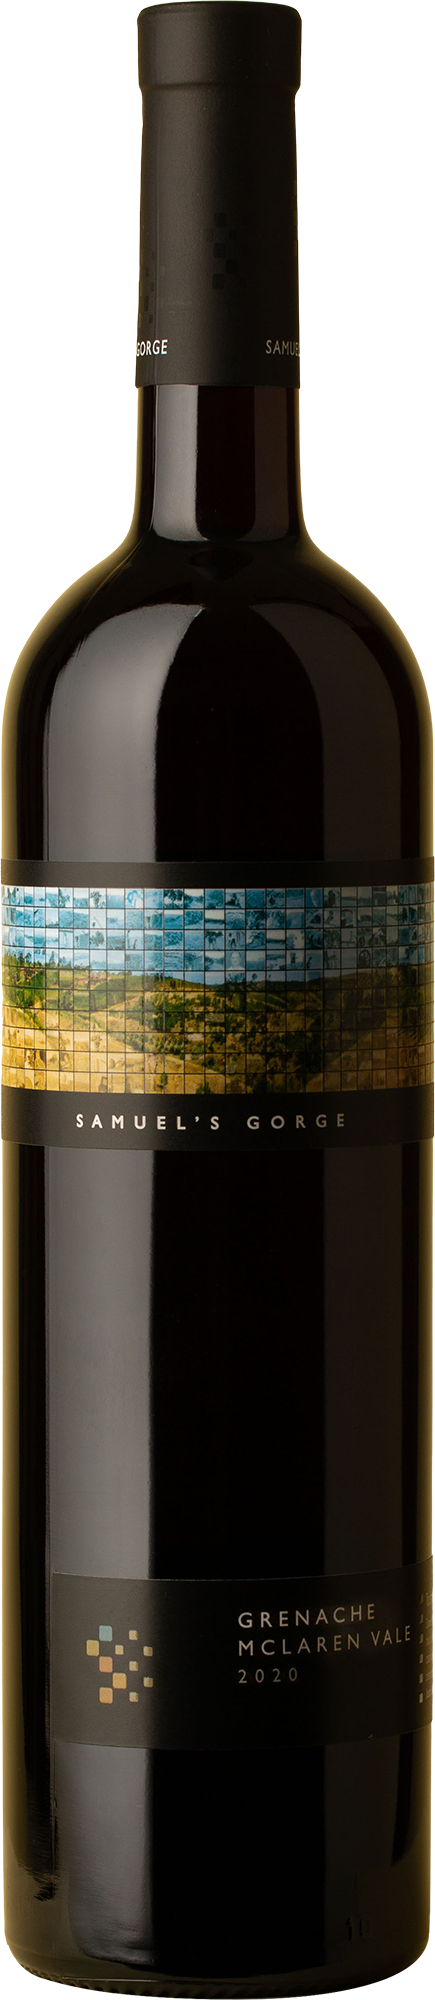 Samuel's Gorge - Grenache 2020 Red Wine